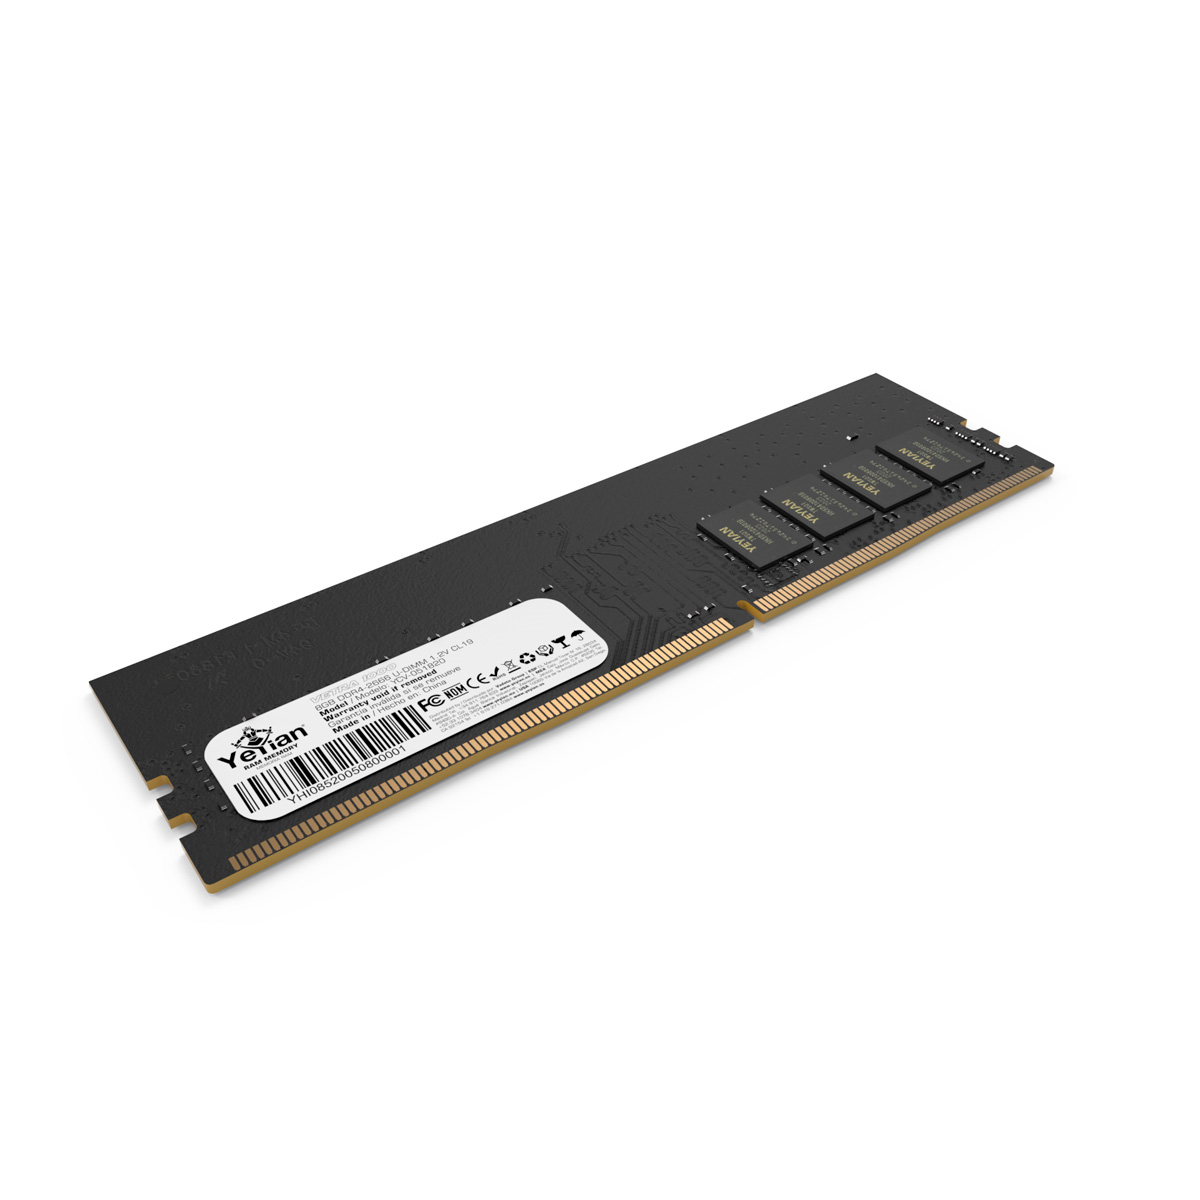 MEMORIA YEYIAN DDR4 GAMING YCV-051820 VETRA, 8GB, MHZ 2666